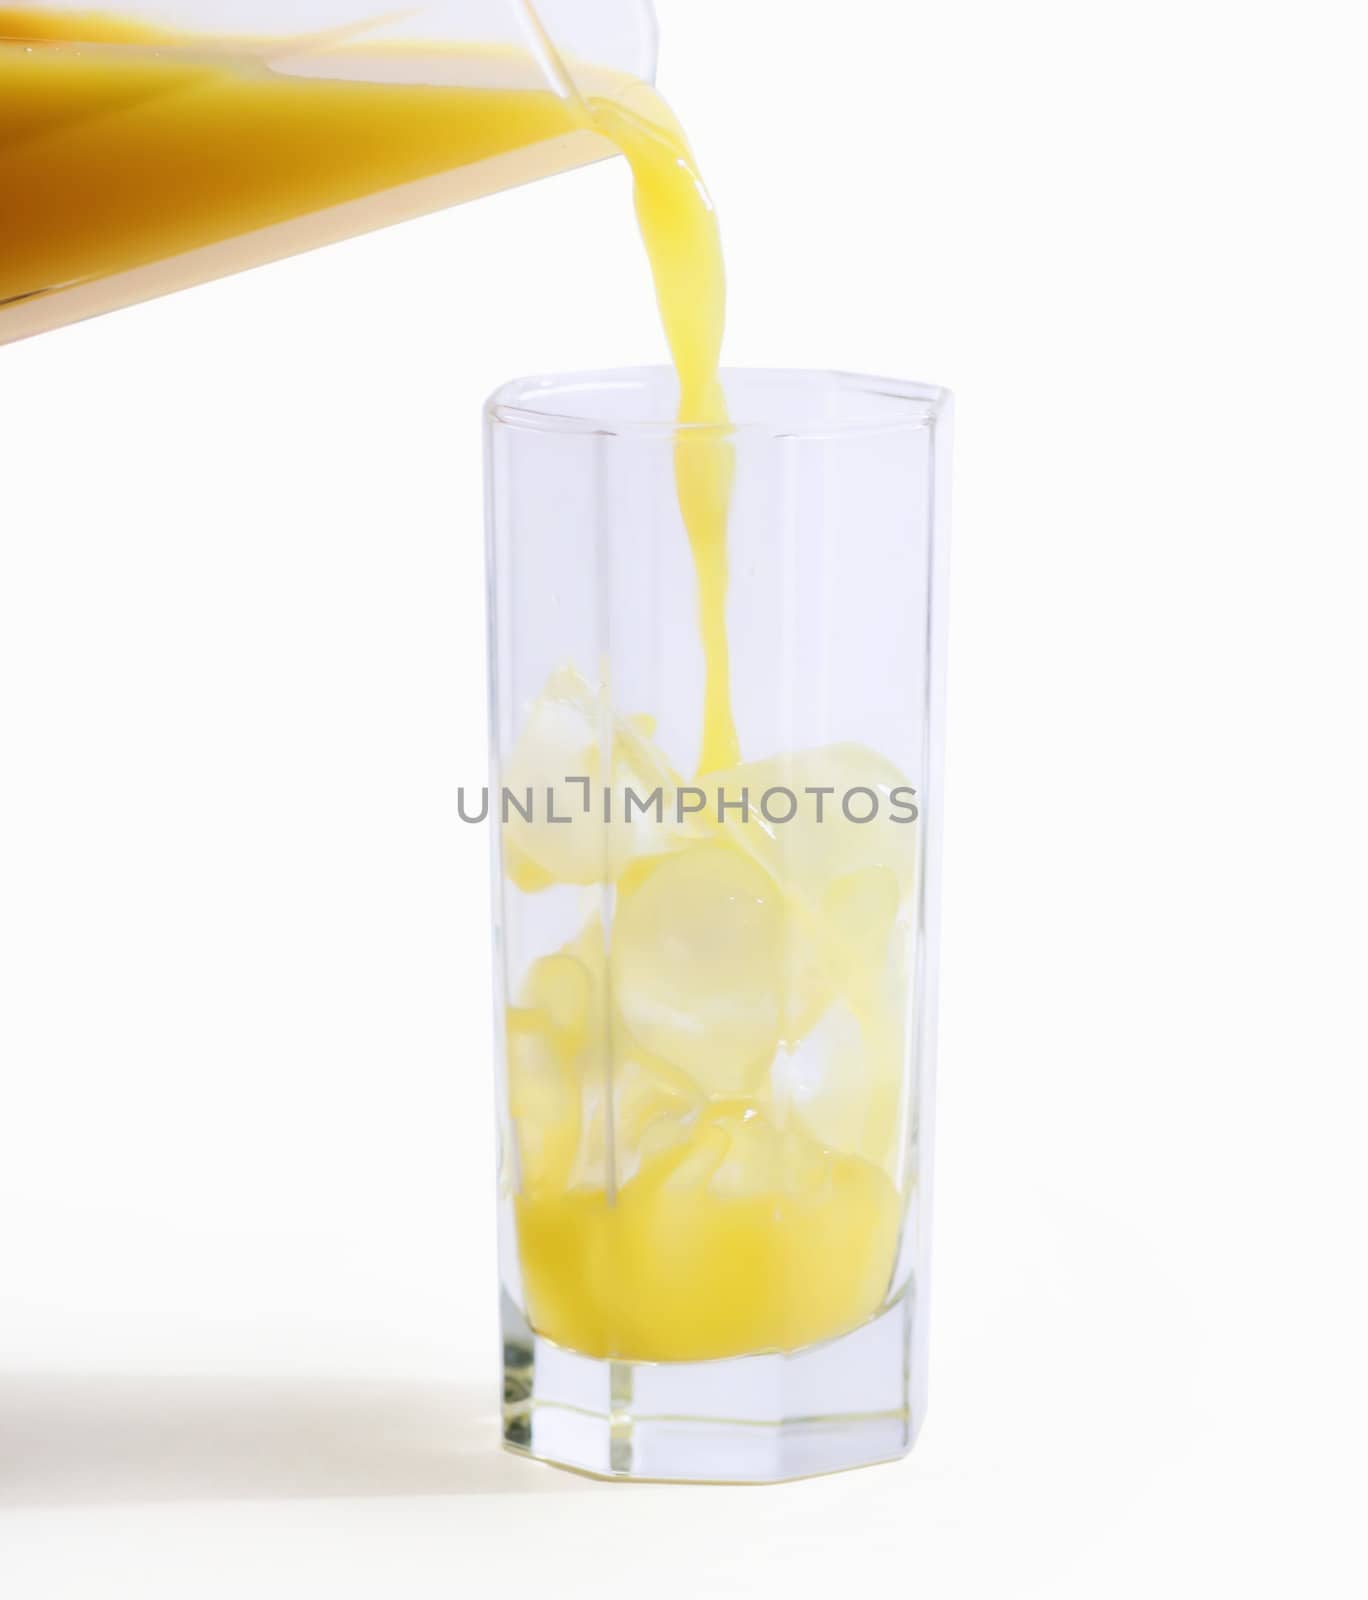 Orange juice by nwp